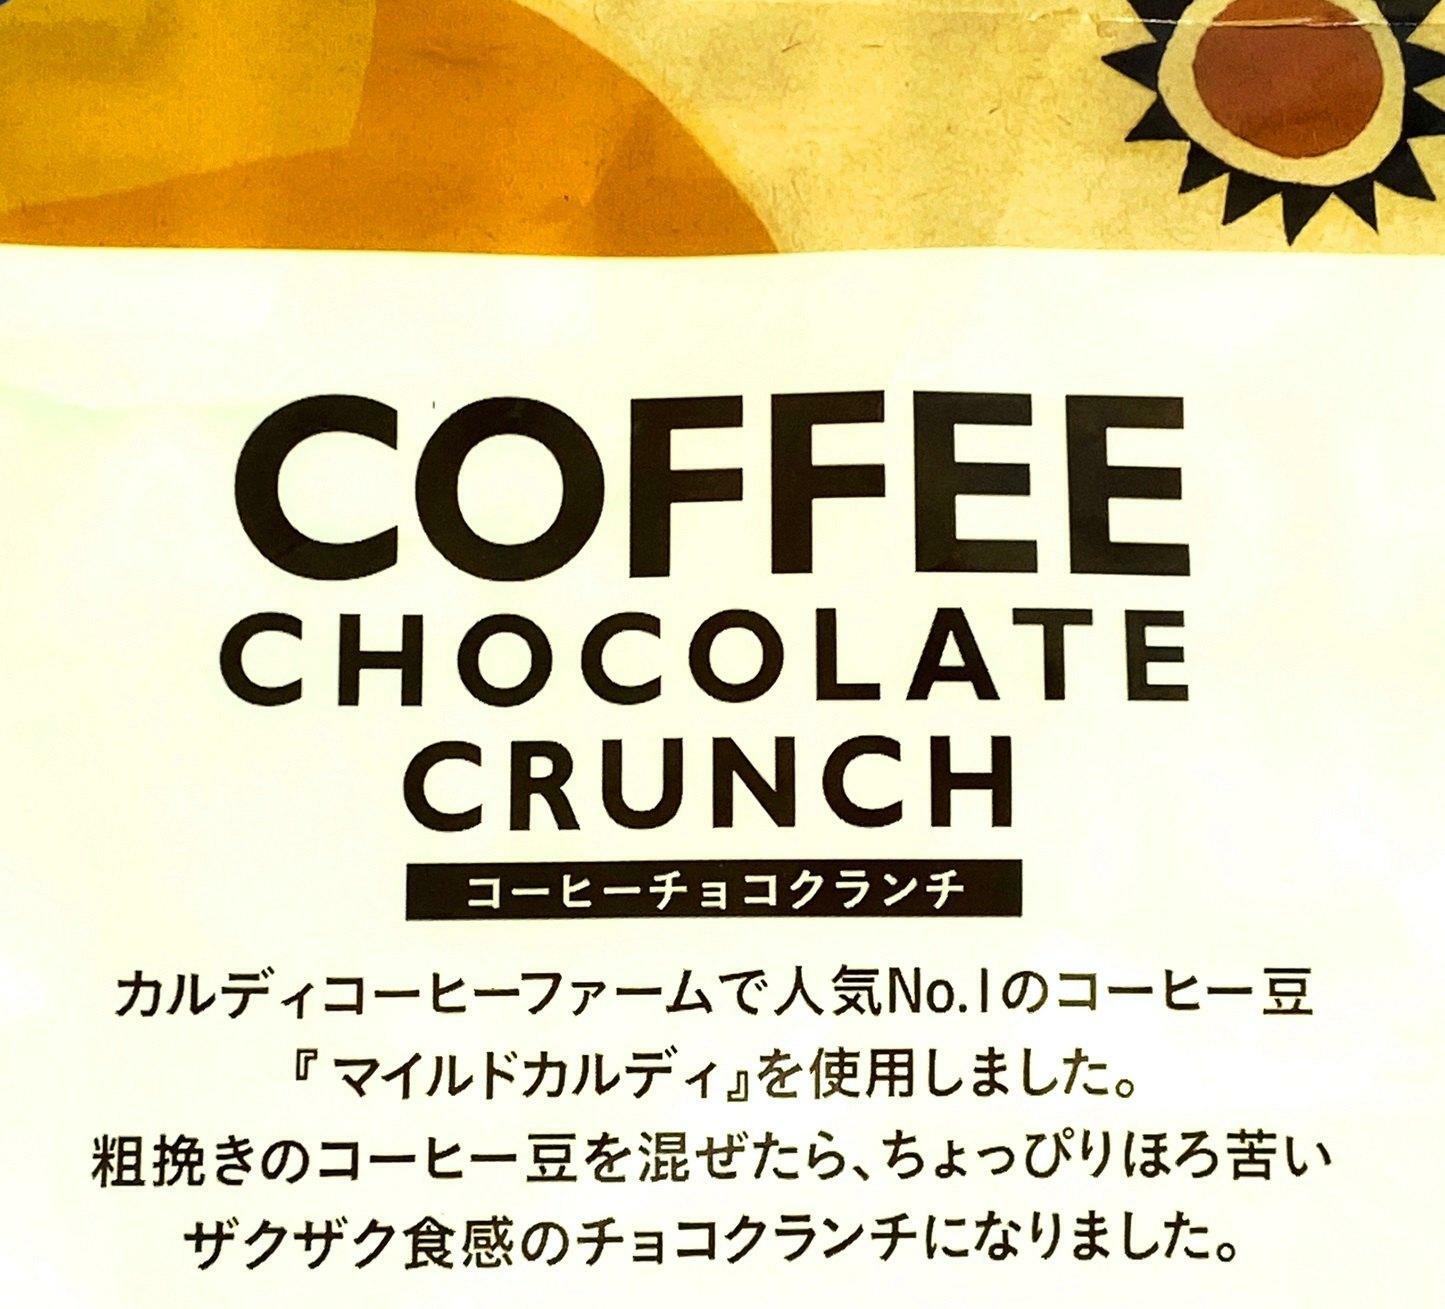 COFFEE CHOCOLATE CRUNCH